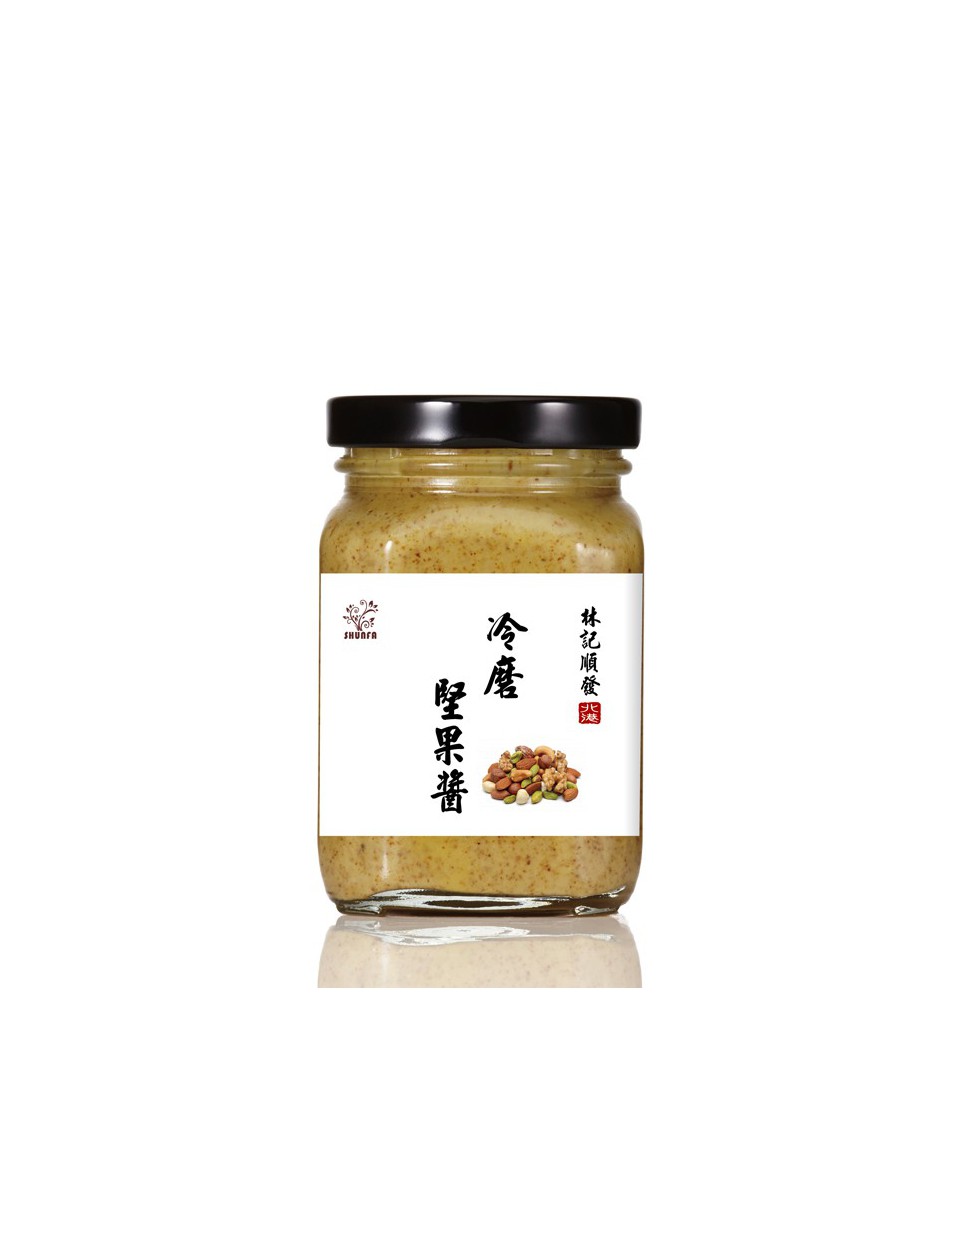 天然冷磨堅果醬 200g (南瓜子/杏仁/腰果/核桃)